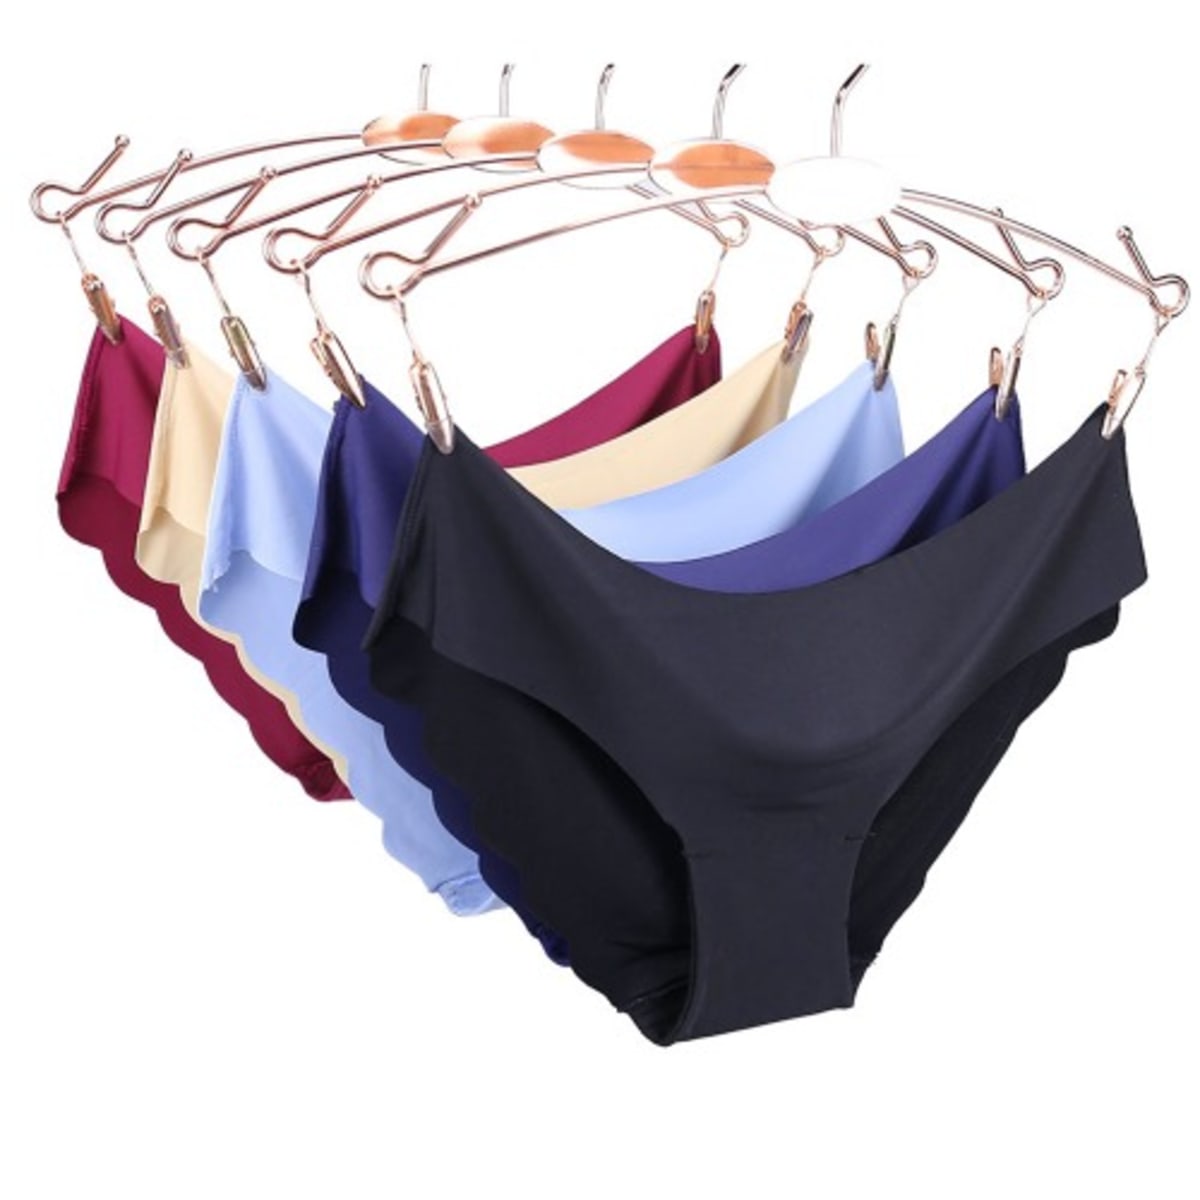 Women's Seamless Panties - 5 Pieces